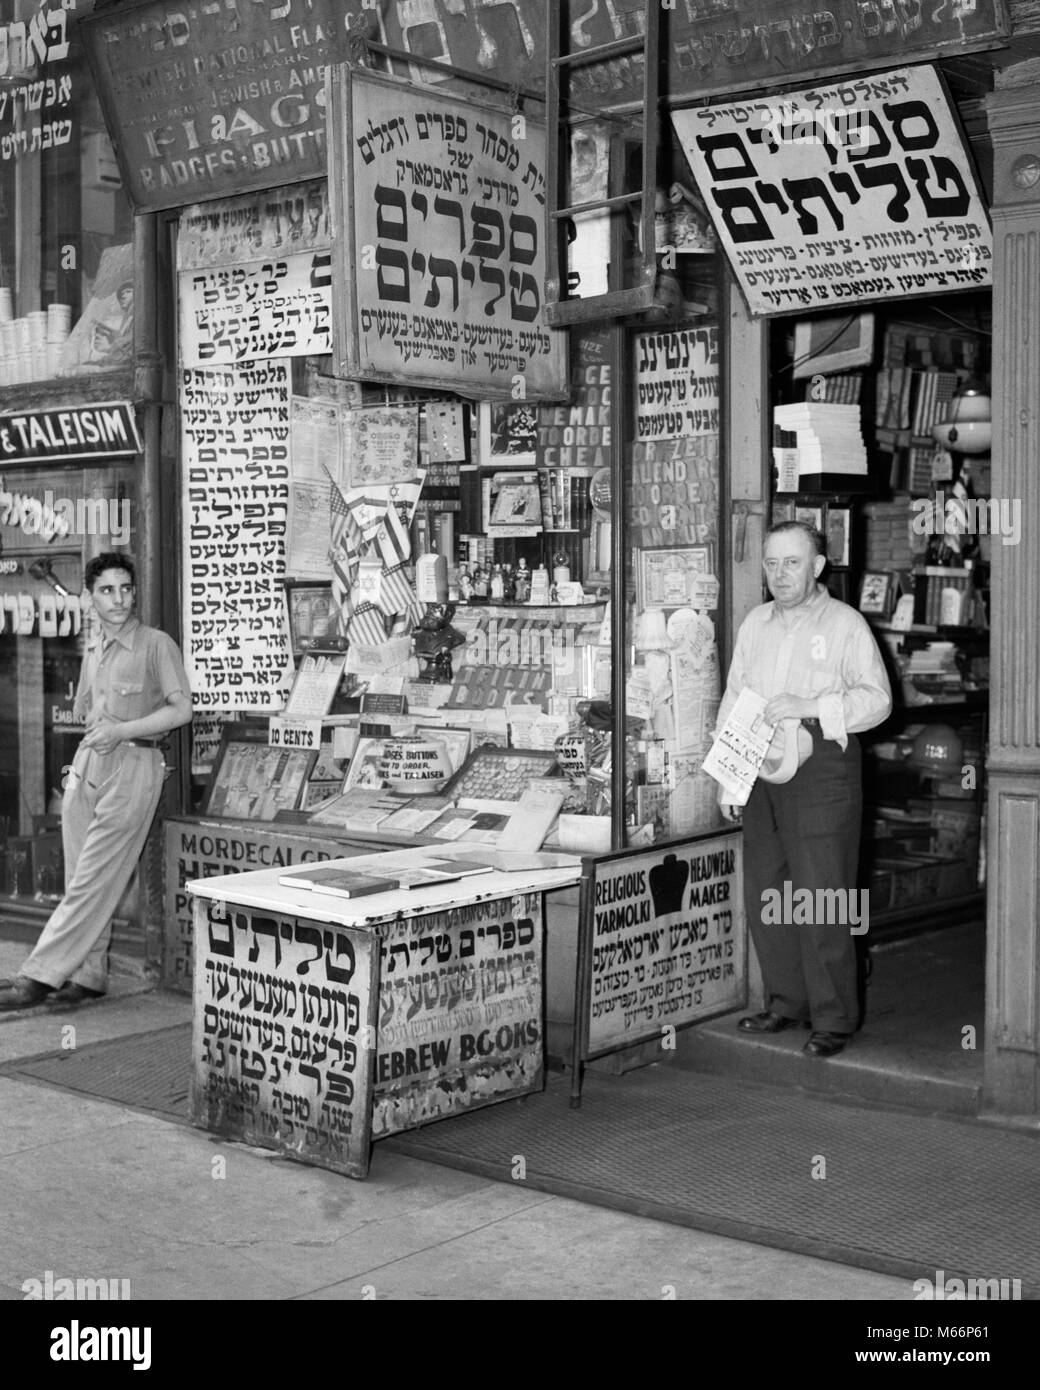 1940s Lower East Side shop segno per bandiere libri pulsante badge in yiddish alfabeto ebraico MANHATTAN NEW YORK CITY USA - Q44202 CPC001 HARS nostalgia di mezza età uomo di mezza età 20-25 anni 45-50 anni 50-55 anni lingua alfabeto ASSISTENZA CLIENTI GOTHAM 18-19 anni etnia NYC COSTA EST NEW YORK CITTÀ STOREFRONT NEW YORK CITY MASCHI GIOVANI ADULT MAN B&W scudetti in bianco e nero di etnia caucasica Ebraico Ebraico giudeo sostentamento Lower East Side di vecchio stile persone yiddish Foto Stock